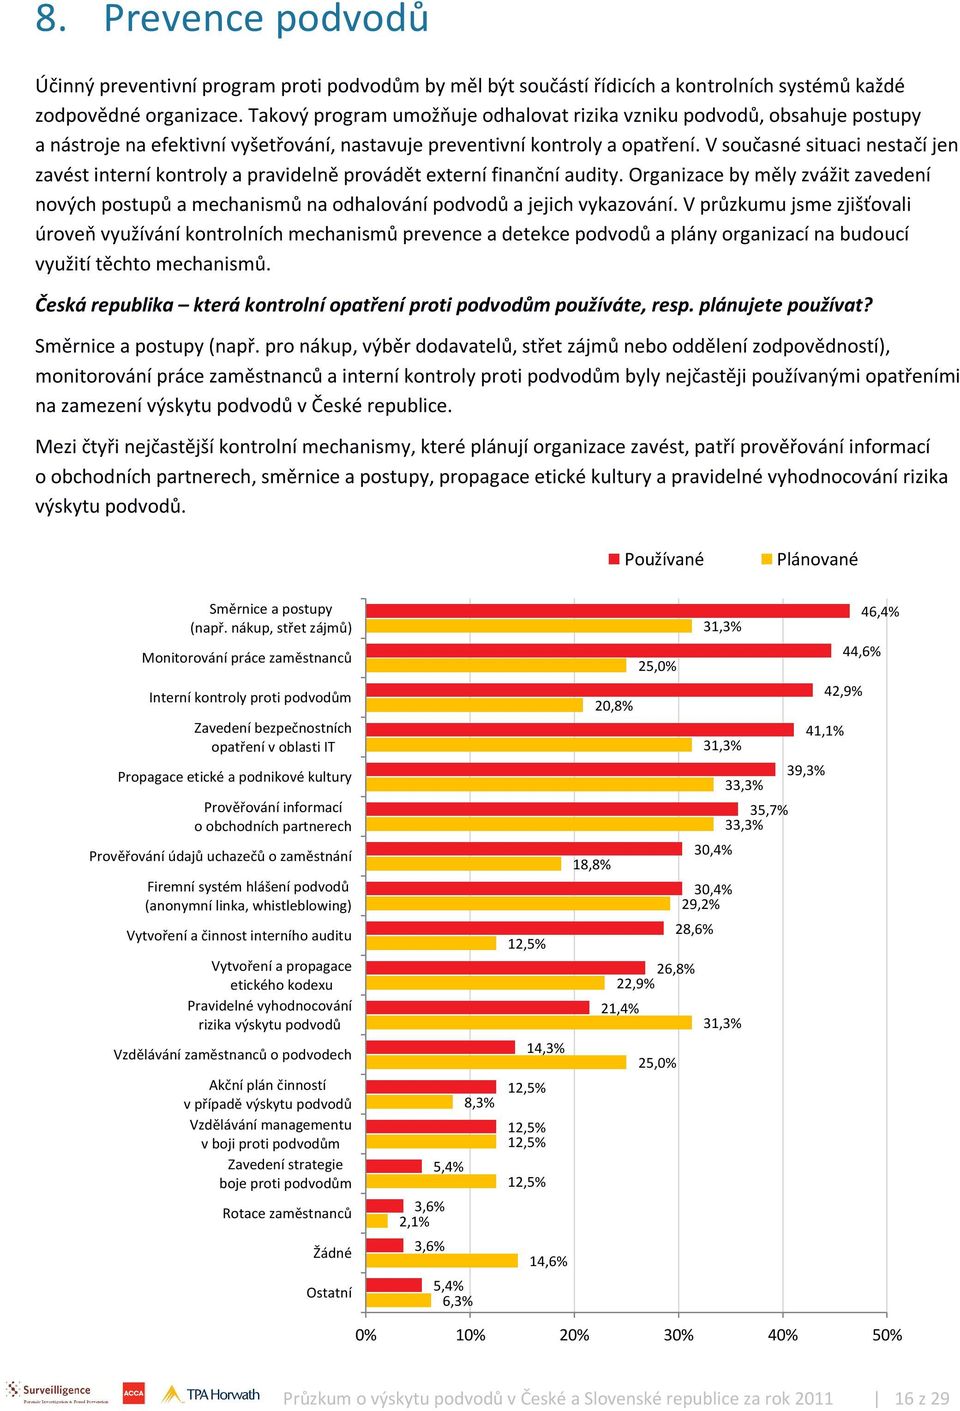 Mezi čtyři nejpopulárnější kontrolní mechanismy, které plánují organizace na Slovensku zavést, patří zavedení interních kontrol proti podvodům, vzdělávání zaměstnanců, prověřování informací o